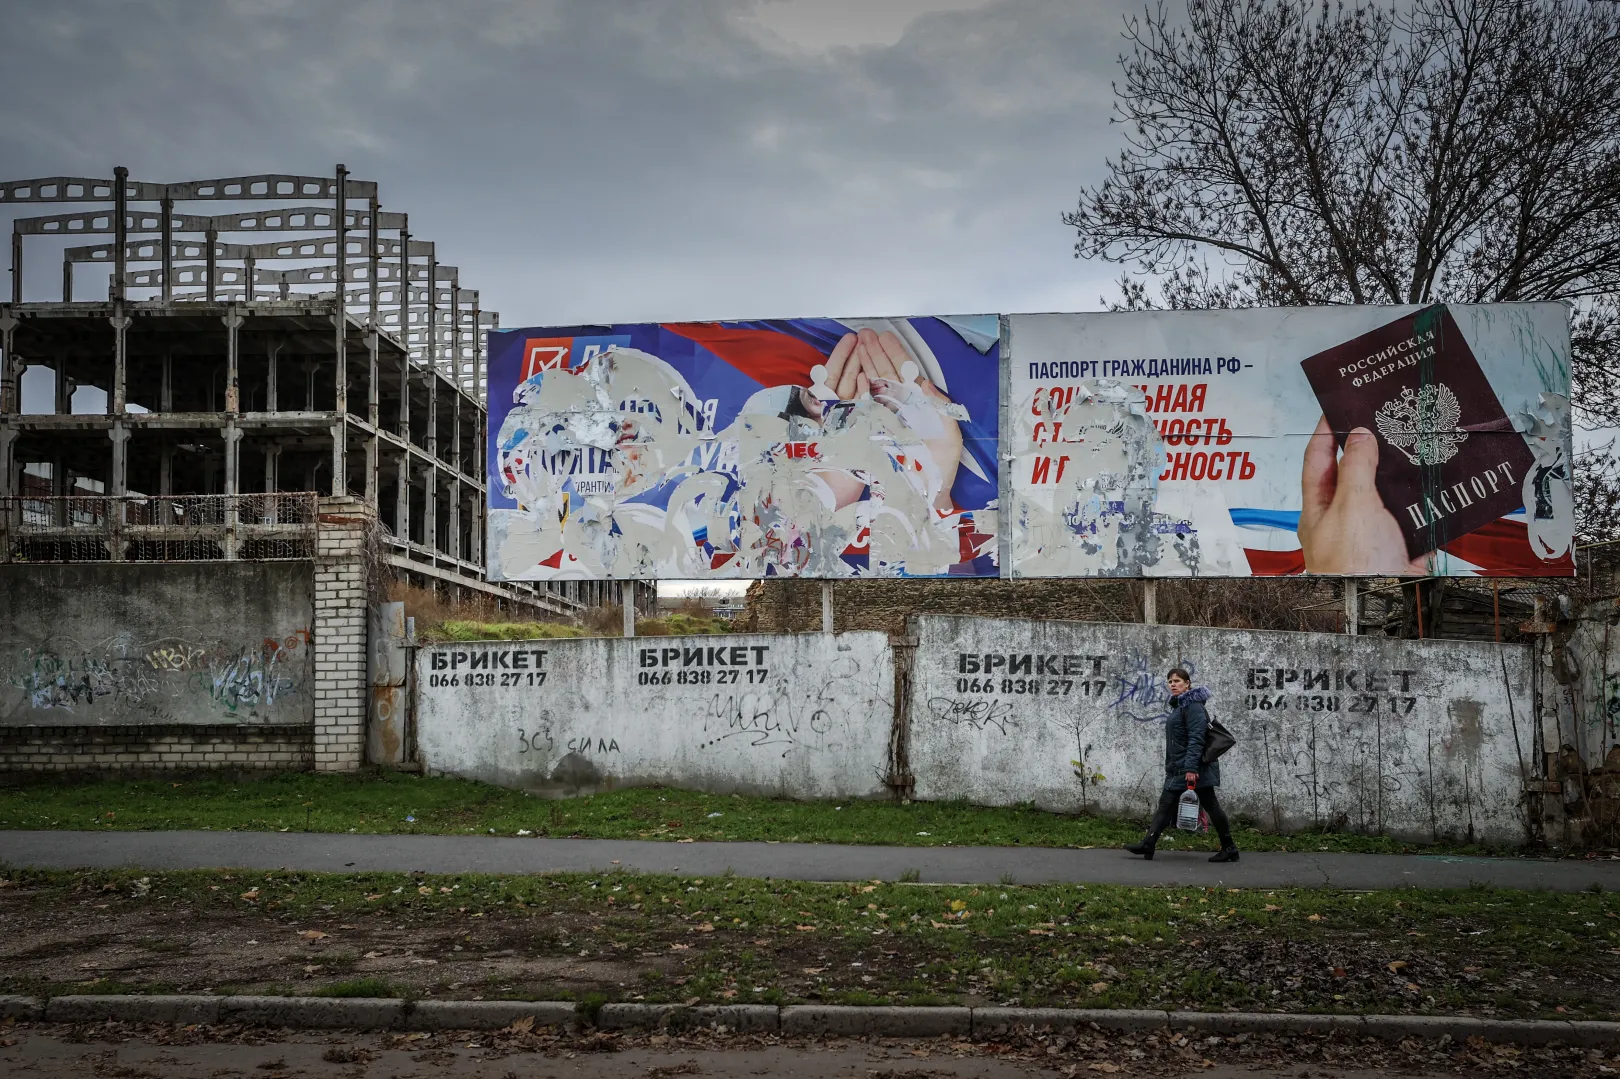 Orosz propagandaplakátok maradékai Herszonban, az Oroszországhoz való csatlakozás és az orosz állampolgárság ígéretével – Fotó: Huszti István / Telex